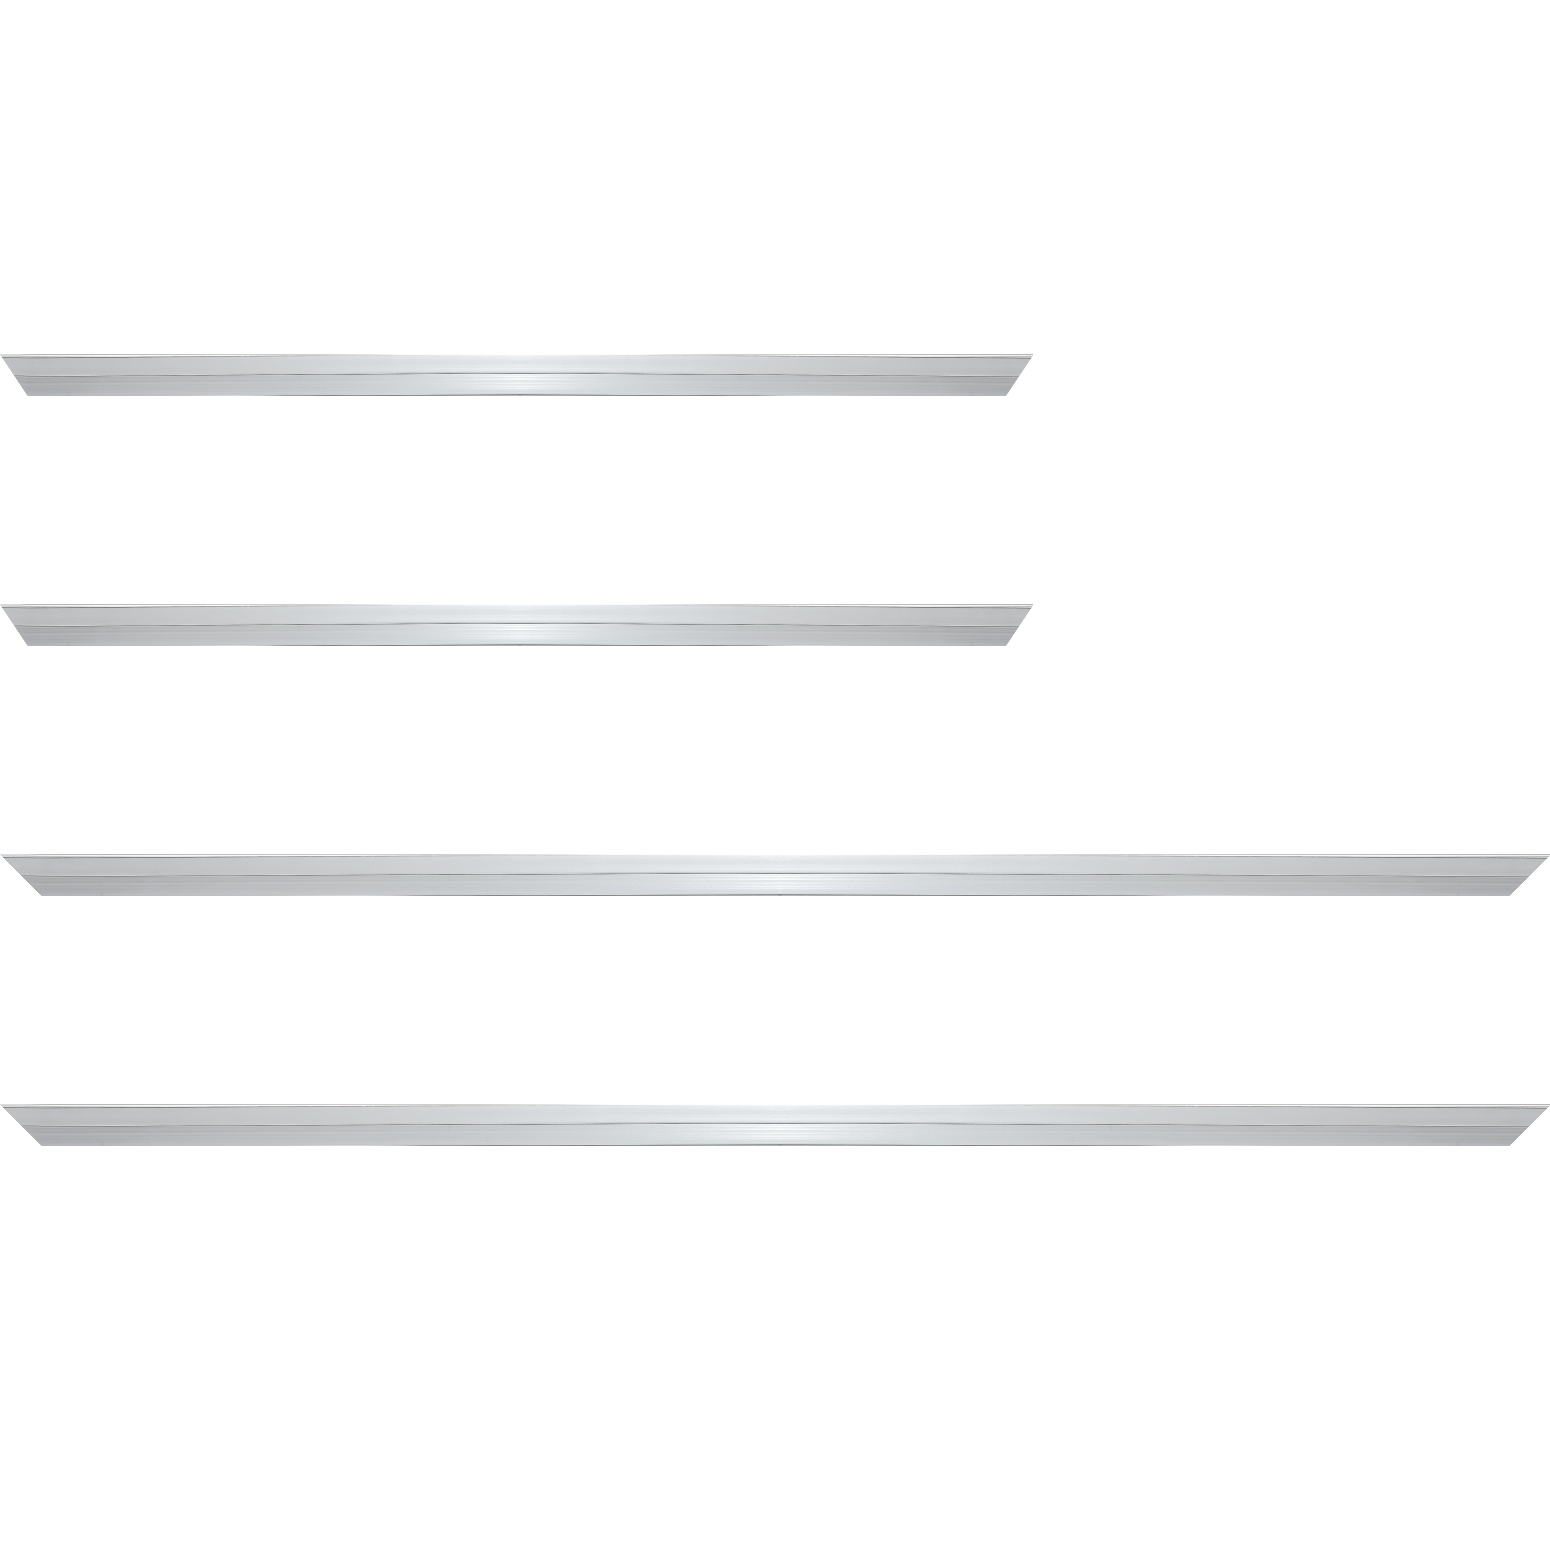 Baguette aluminium profil plat largeur 7mm, couleur argent poli ,(le sujet qui sera glissé dans le cadre sera en retrait de 9mm de la face du cadre assurant un effet très contemporain) mise en place du sujet rapide et simple: assemblage du cadre par double équerre à vis (livré avec le système d'accrochage qui se glisse dans le profilé) encadrement non assemblé,  livré avec son sachet d'accessoires - 59.4x84.1